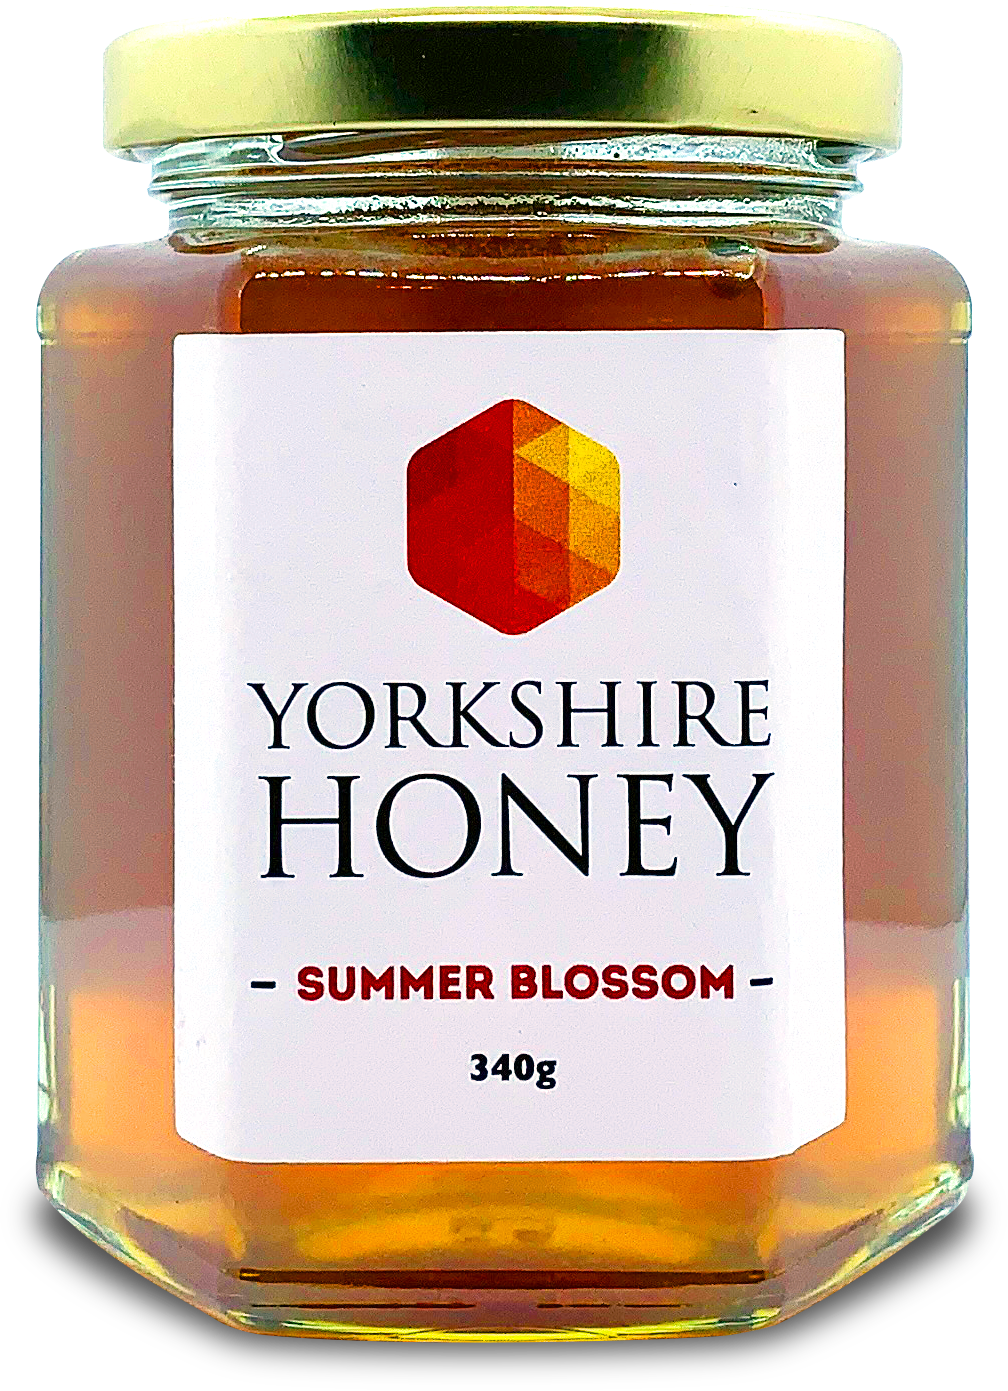 Yorkshire honey